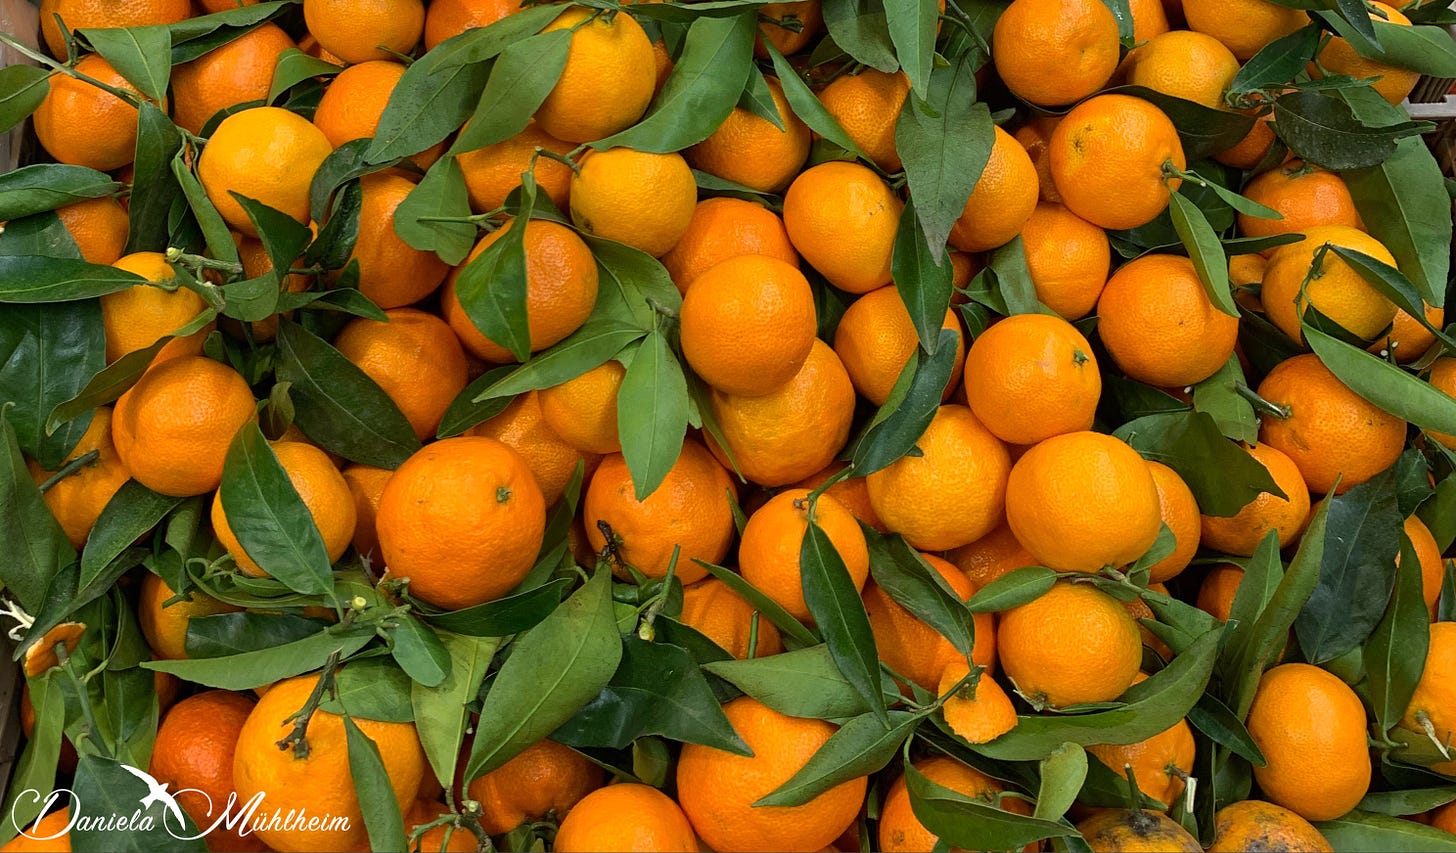 Freshly picked oranges